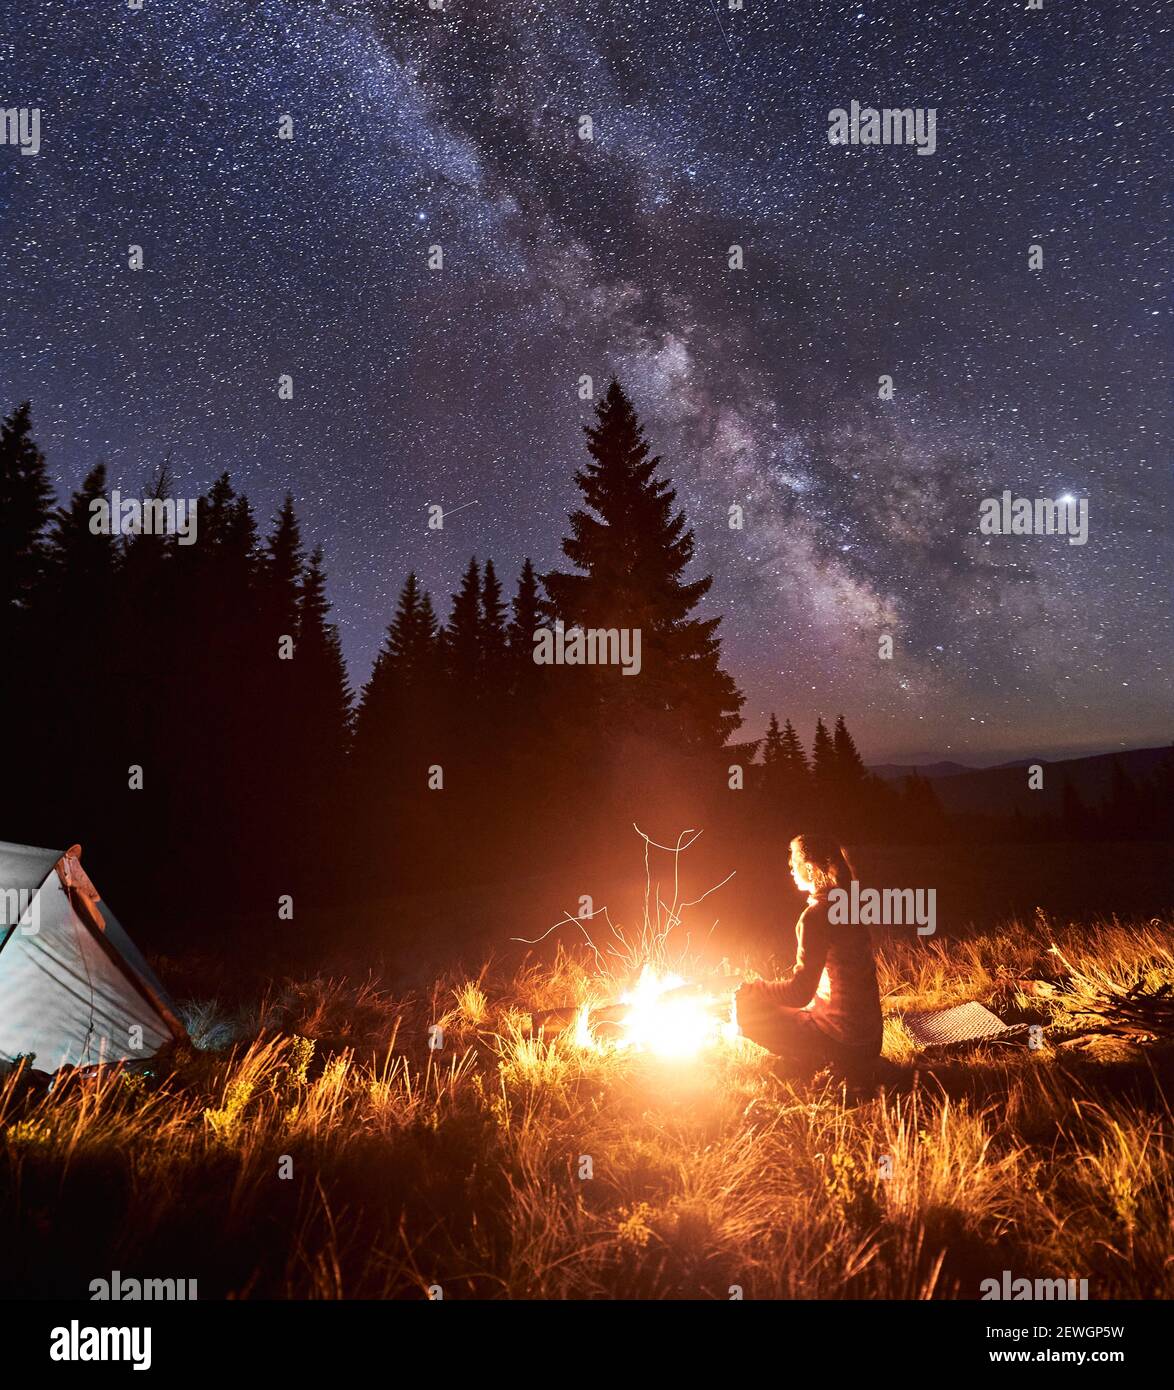 Seitenansicht der weiblichen Touristen, die sich am Lagerfeuer auf dem Hintergrund des Zeltes und des Fichtenwaldes unter dem Sternenhimmel ausruhen, auf dem die Milchstraße sichtbar ist. Lagerfeuer mit einer großen Flamme unter dem Nachthimmel Stockfoto